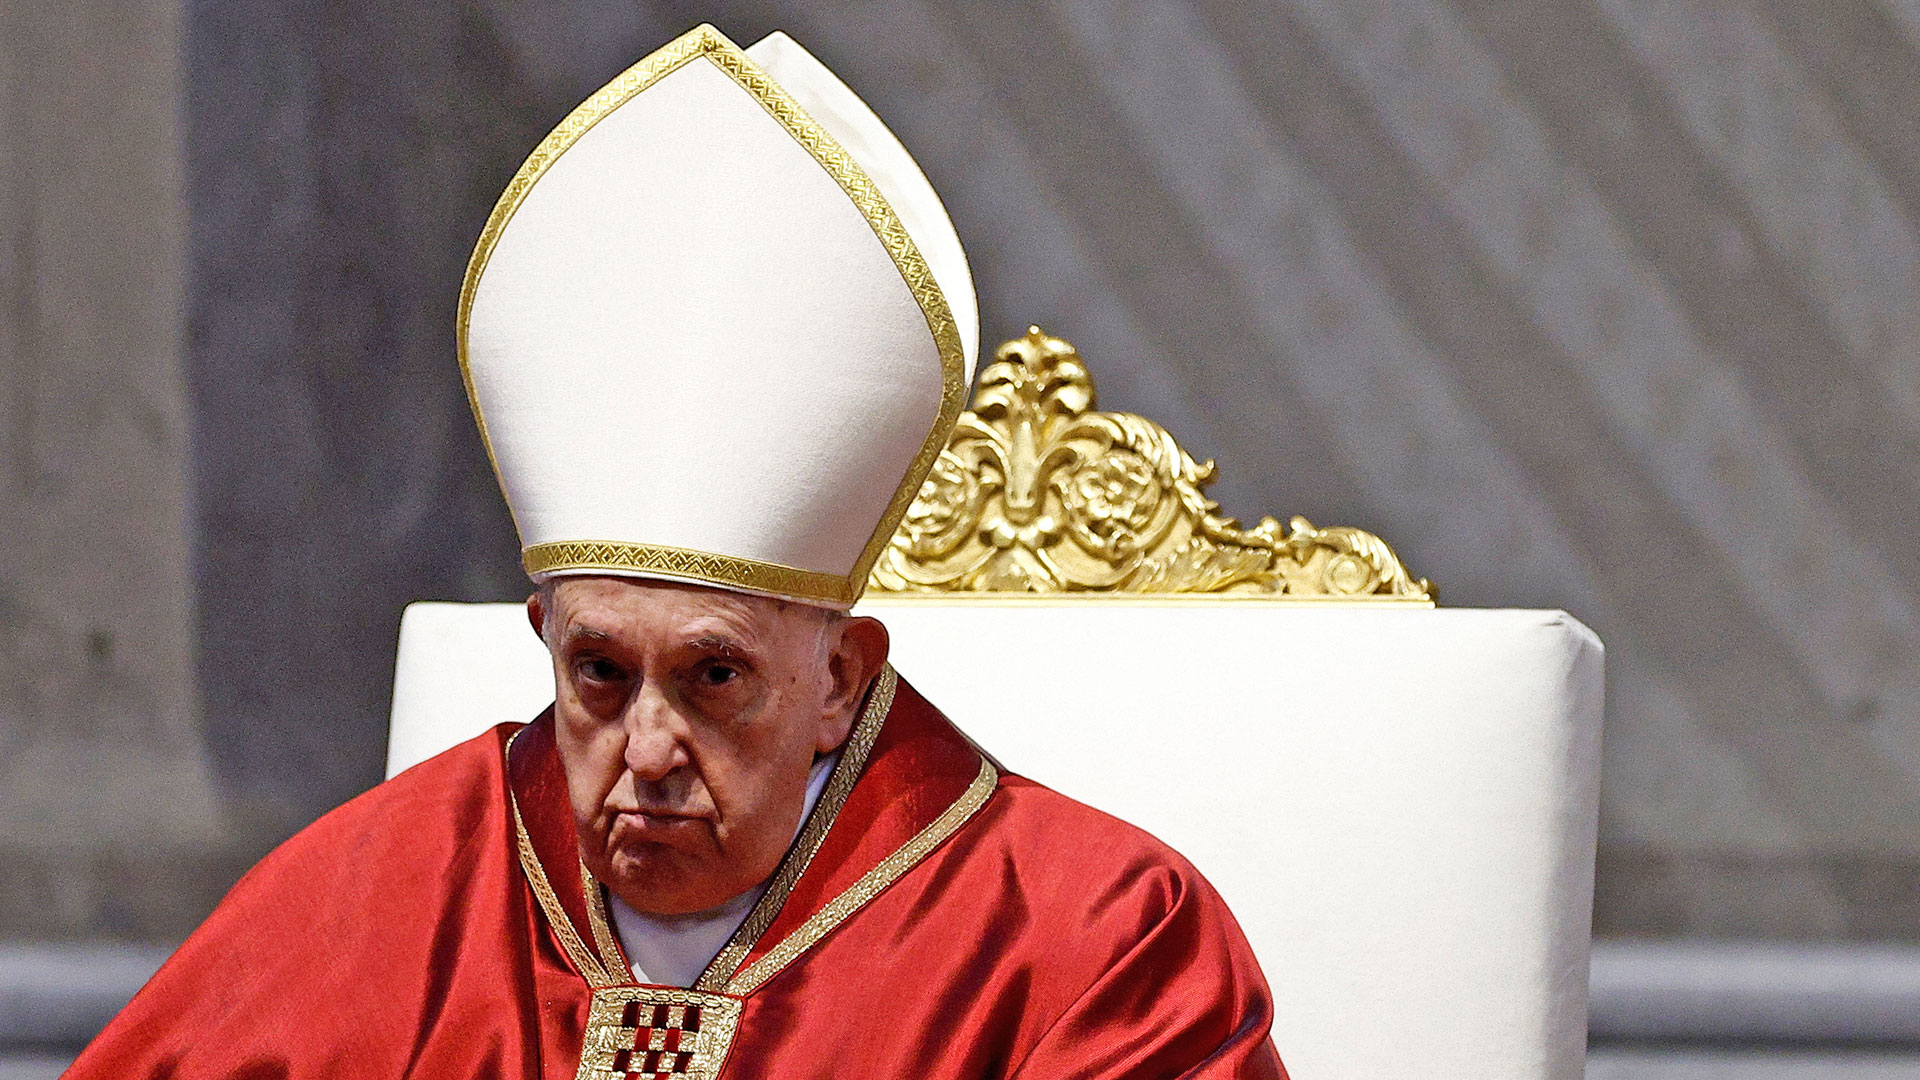 El libro que busca “hacer un lío suficiente para que al Papa casi le parezca demasiado”